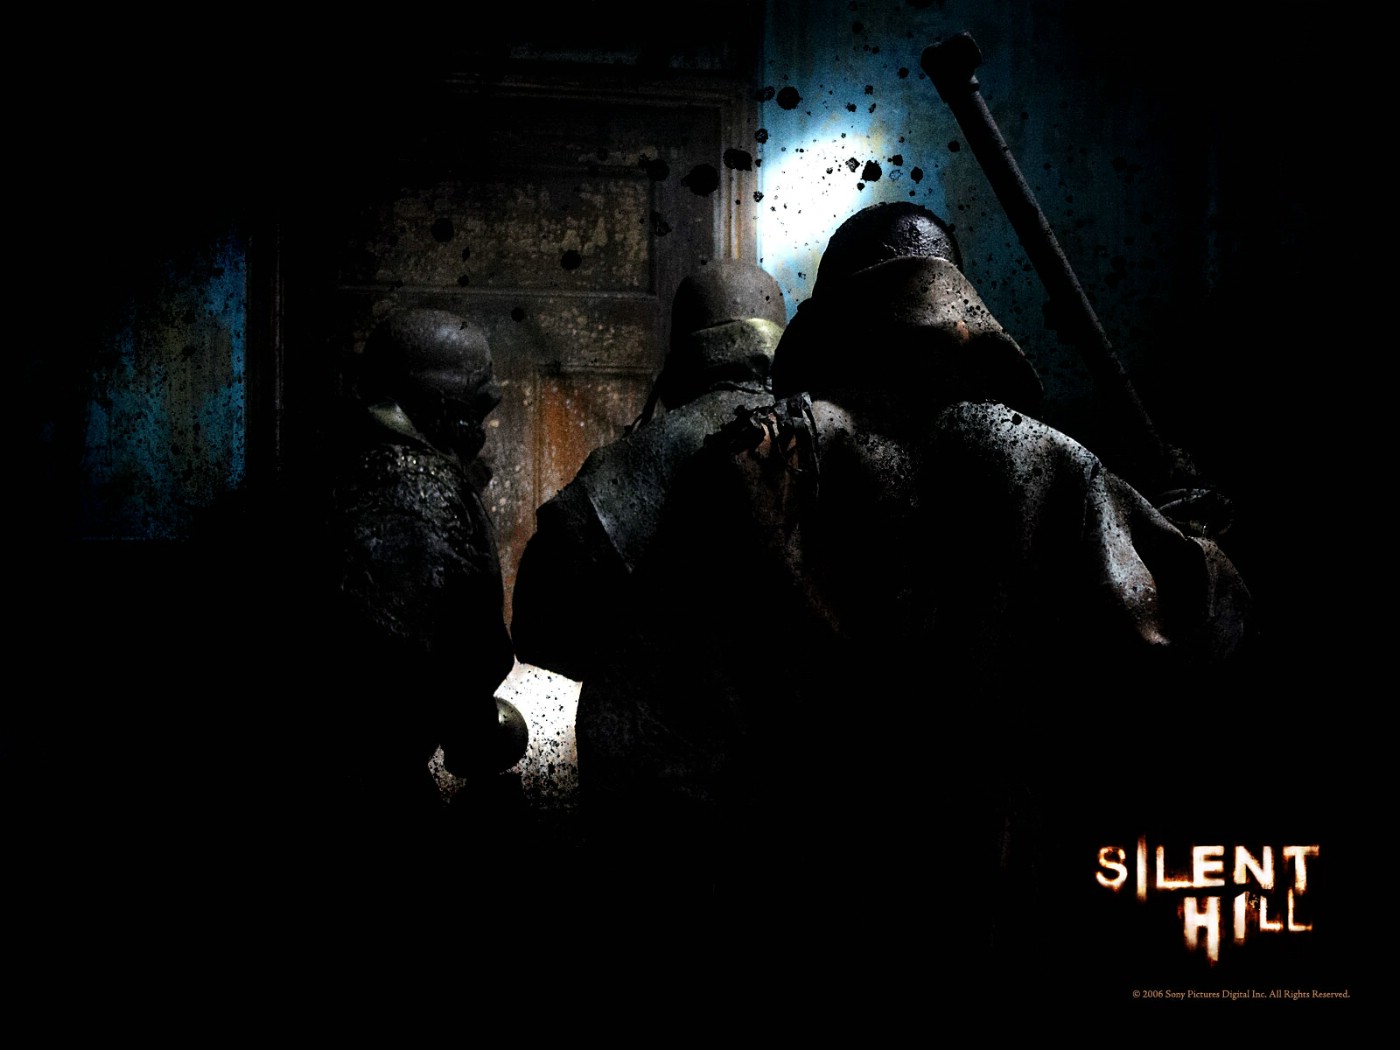 壁纸1400x1050 寂静岭 电影壁纸 Movie wallpaper Silent Hill 2006壁纸 恐怖电影《寂静岭 Silent Hill》壁纸 恐怖电影《寂静岭 Silent Hill》图片 恐怖电影《寂静岭 Silent Hill》素材 影视壁纸 影视图库 影视图片素材桌面壁纸